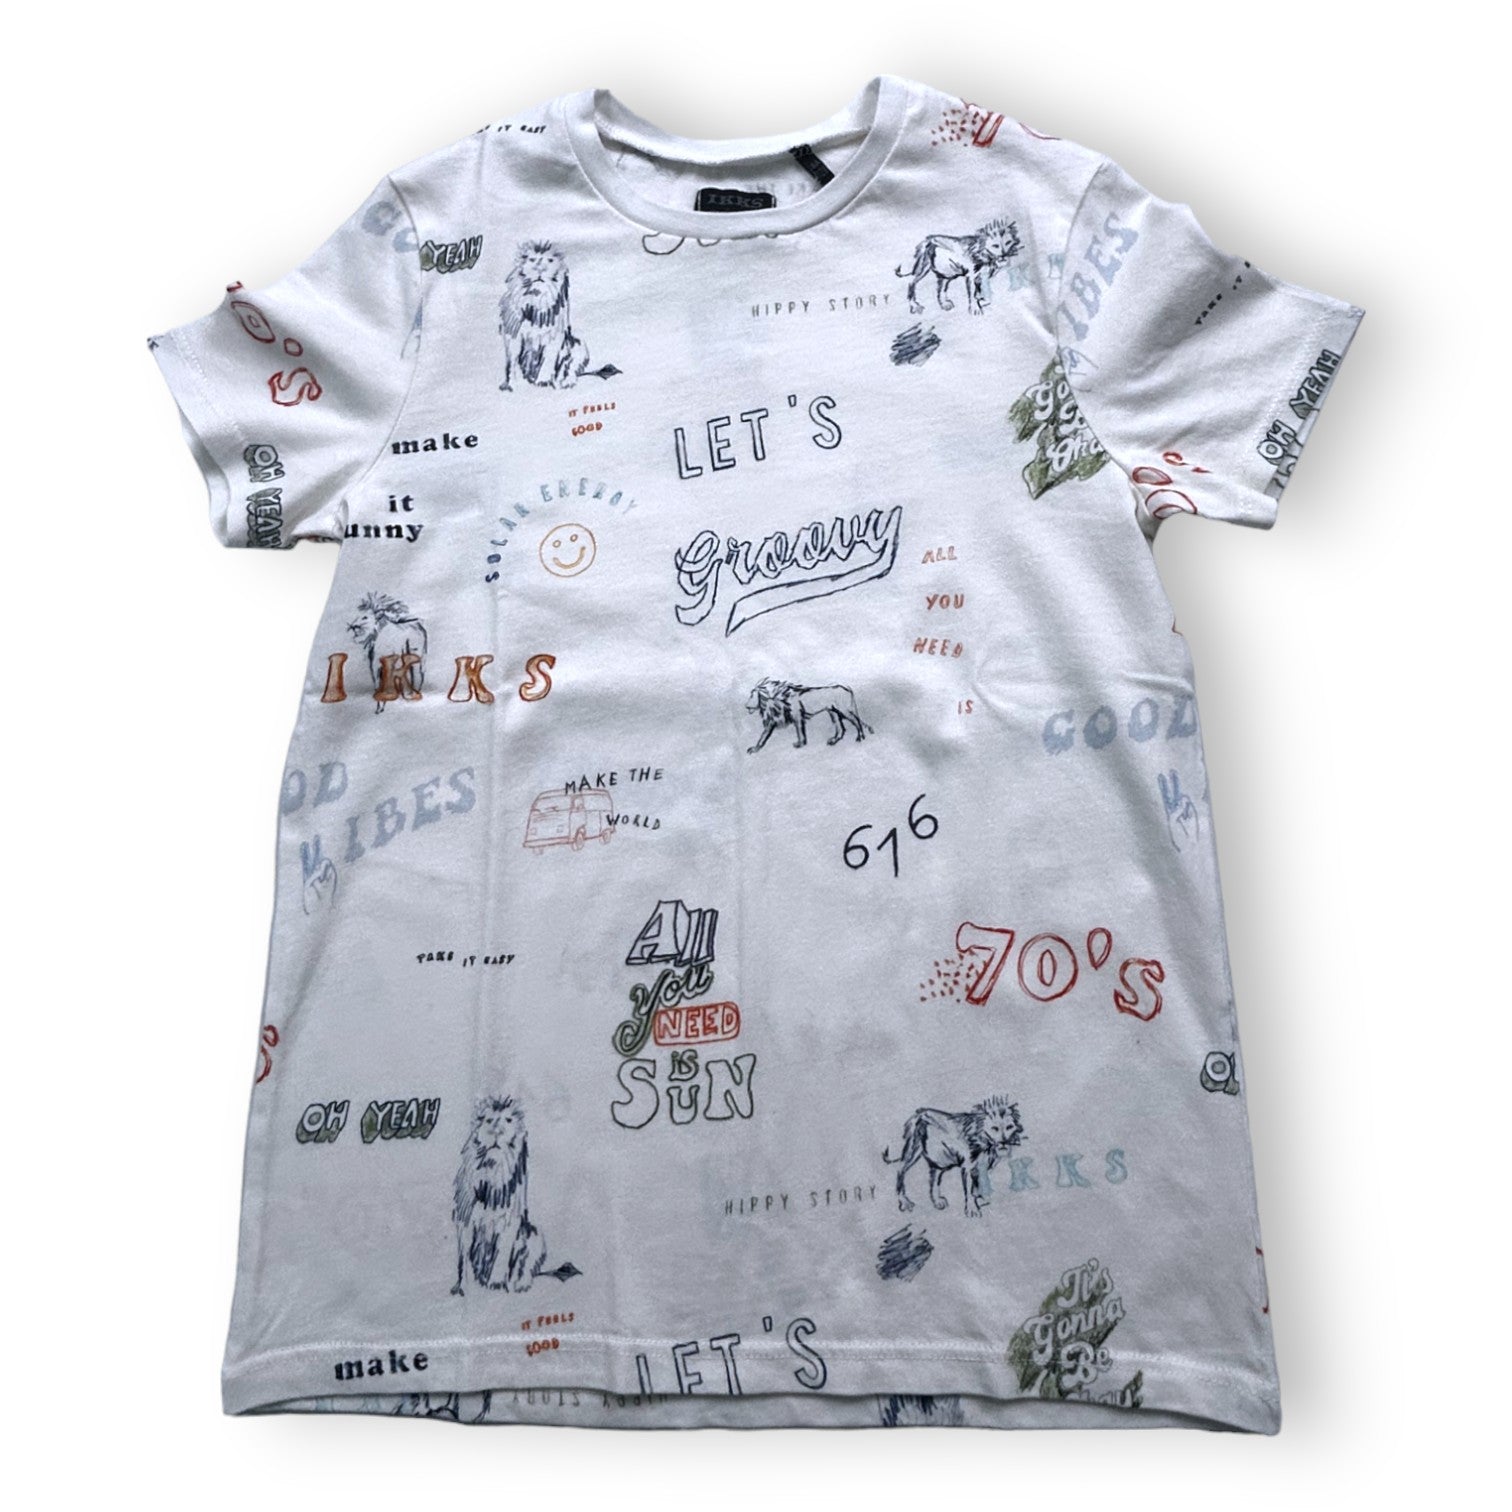 IKKS - T-shirt blanc avec plusieurs dessins - 8 ans